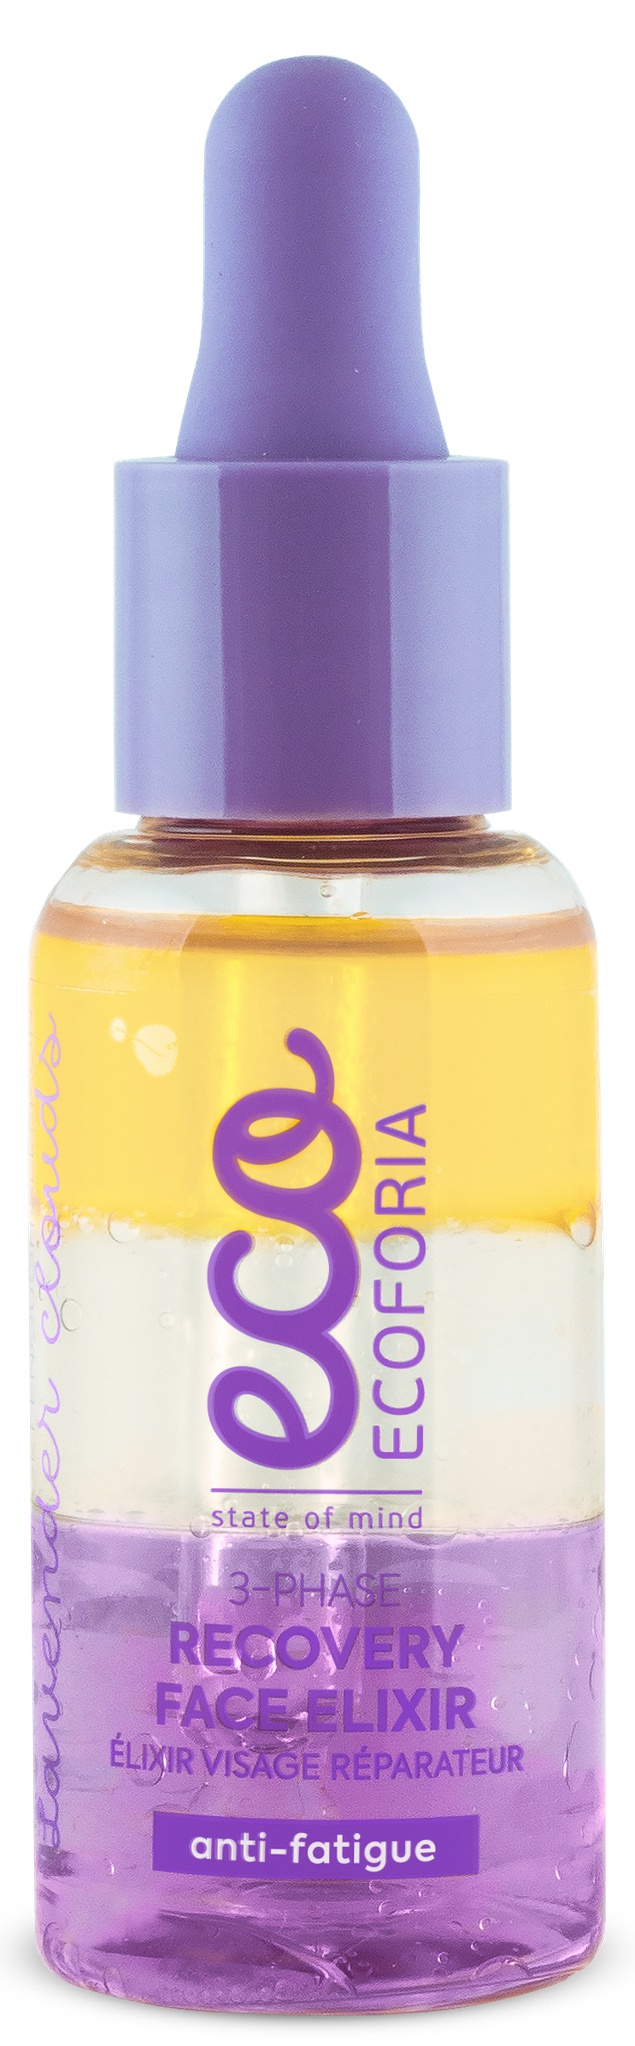 Ecoforia 3-Phase Recovery Face Elixir